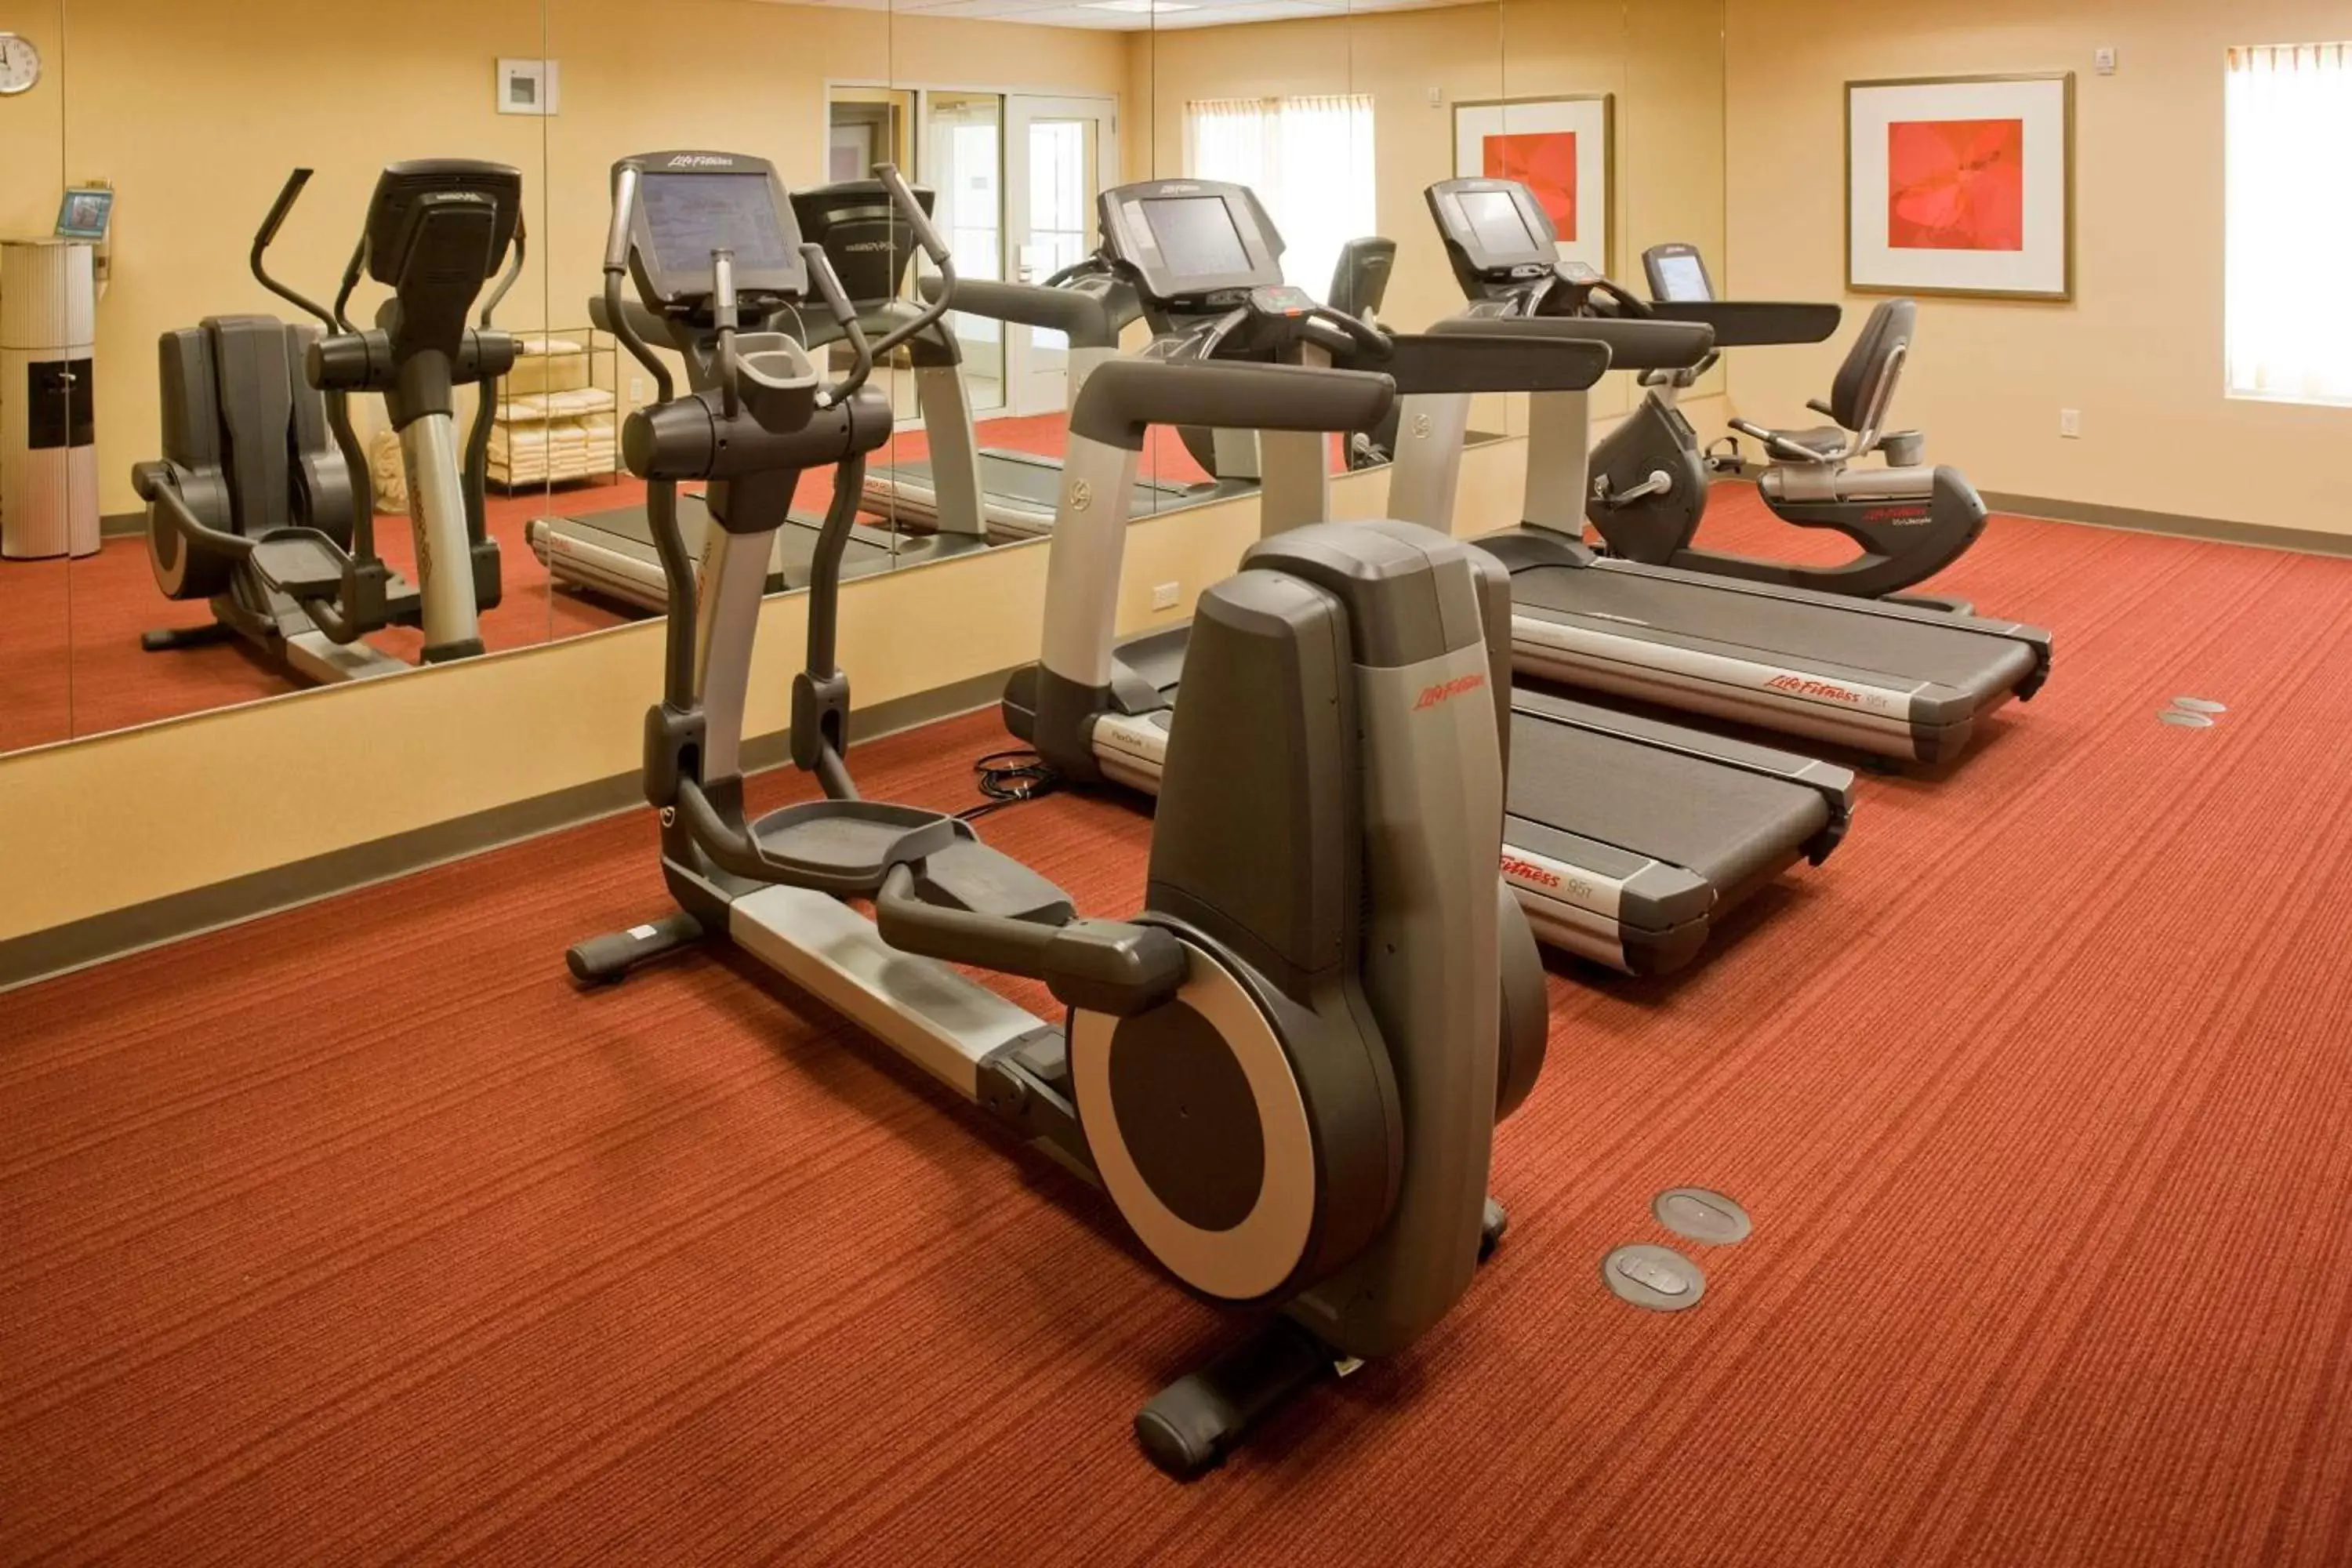 Fitness centre/facilities in Hyatt Place Santa Fe